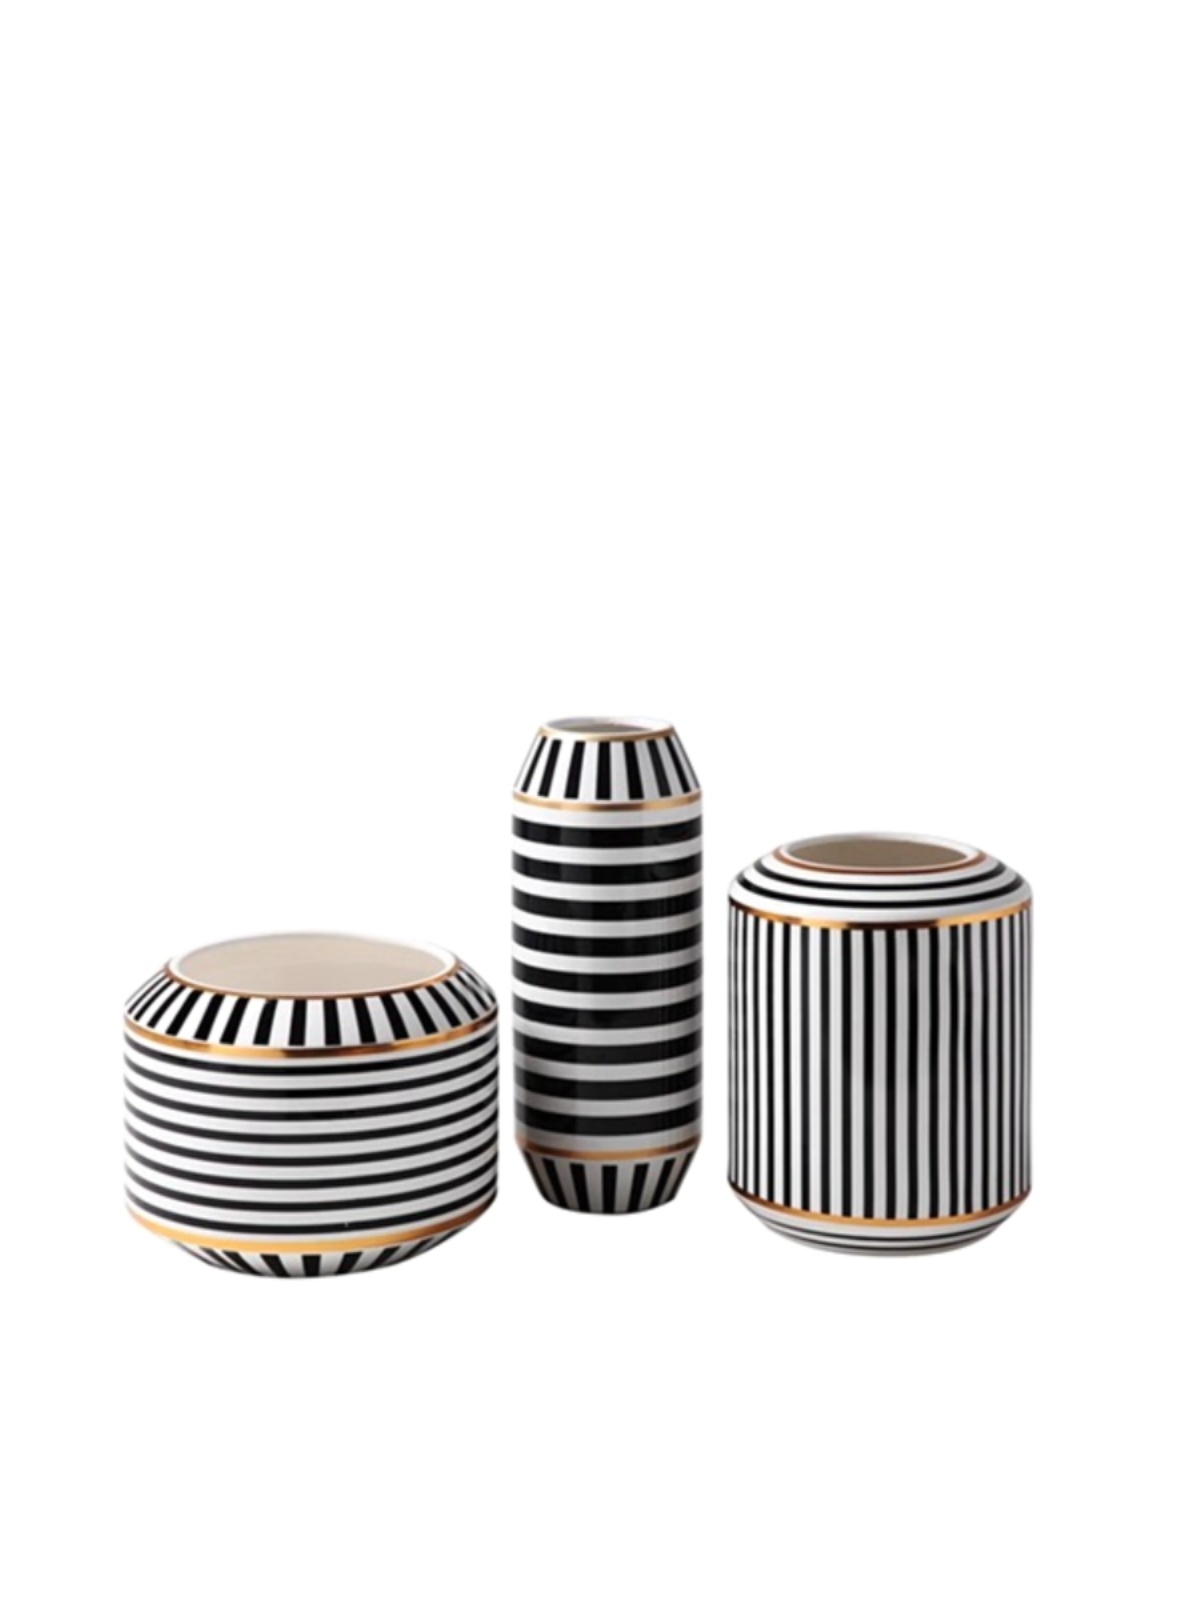 抽象后现代轻奢风新古典陶瓷电镀金色几何线条纹白色黑色柱形花瓶